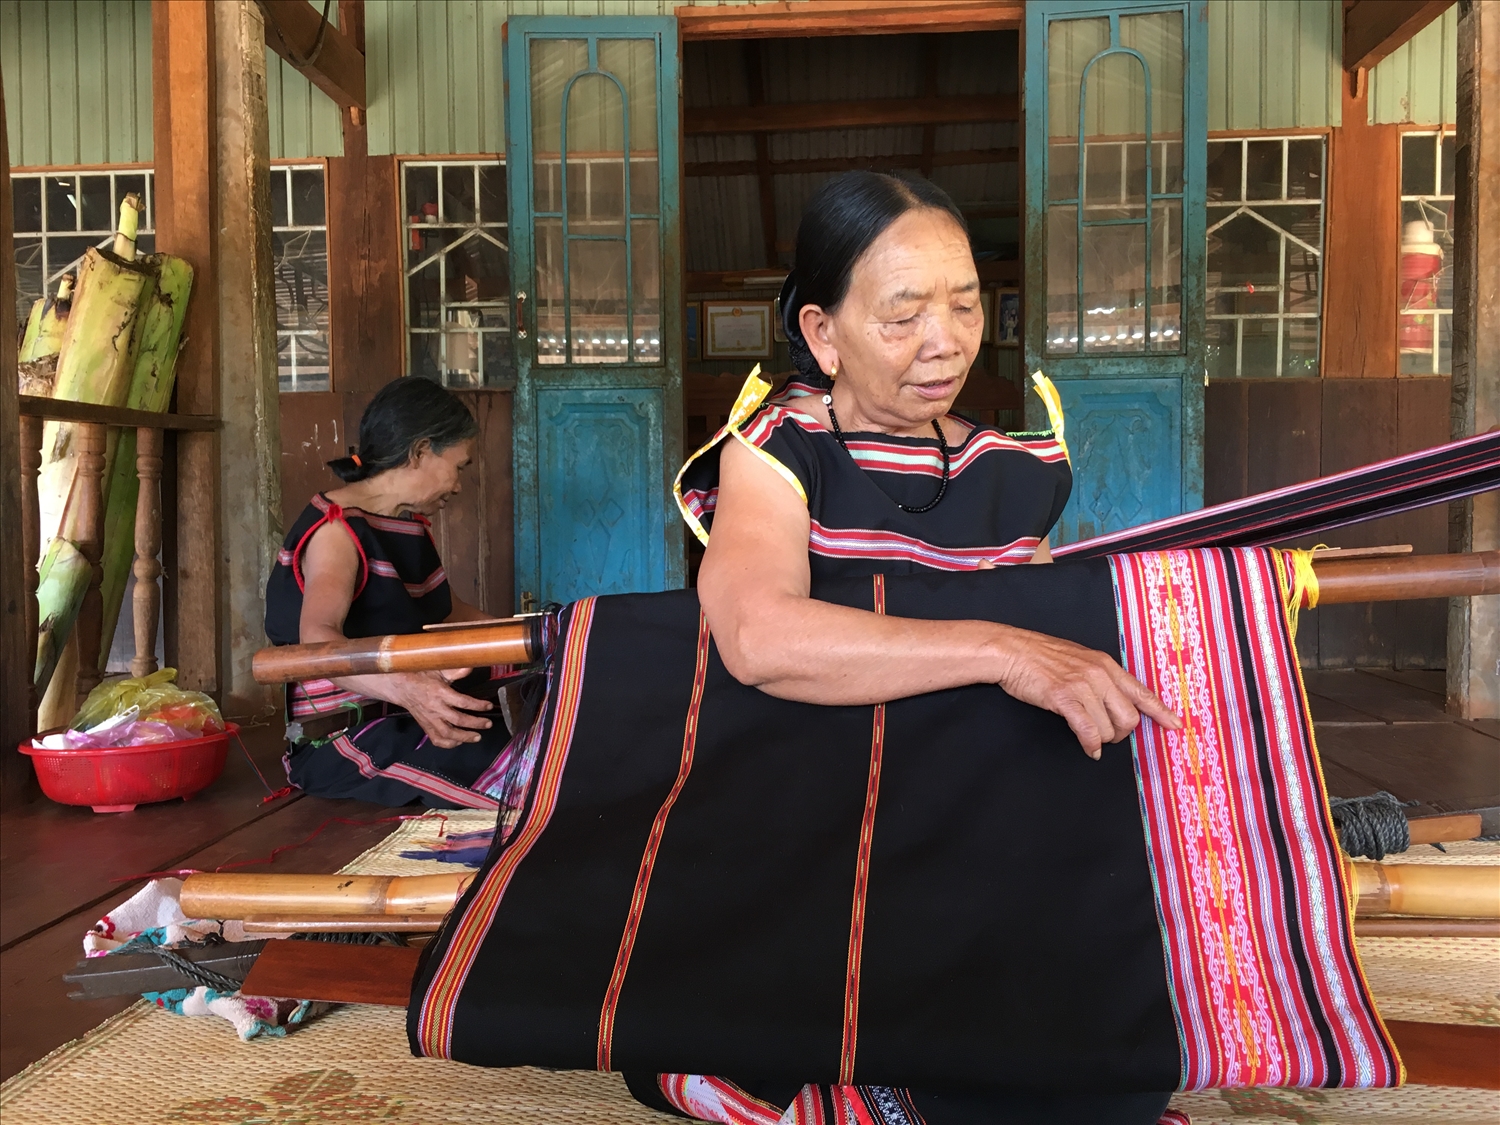 Bằng đôi tay khéo léo và sự sáng tạo, người phụ nữ Tây Nguyên đã dệt nên những bộ trang phục truyền thống mang đặc trưng văn hóa tộc người. 